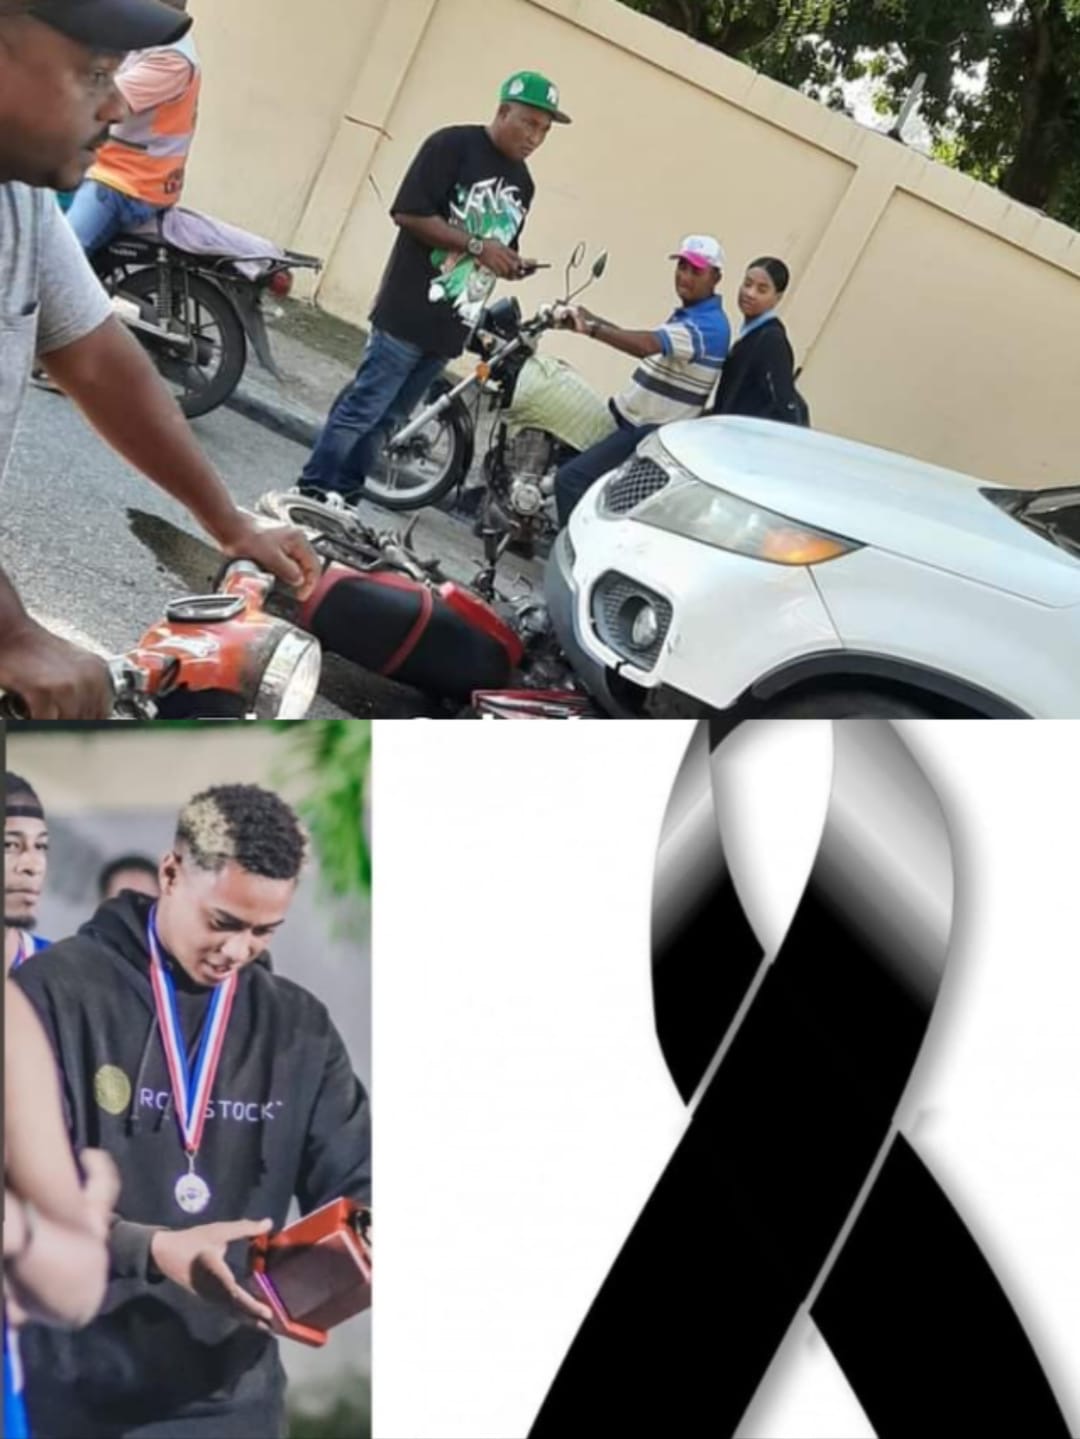    ¡Trágica! Fallece joven deportista de Imbert tras sufrir accidente, motociclista se lesiona al chocar con yipeta en Puerto Plata   